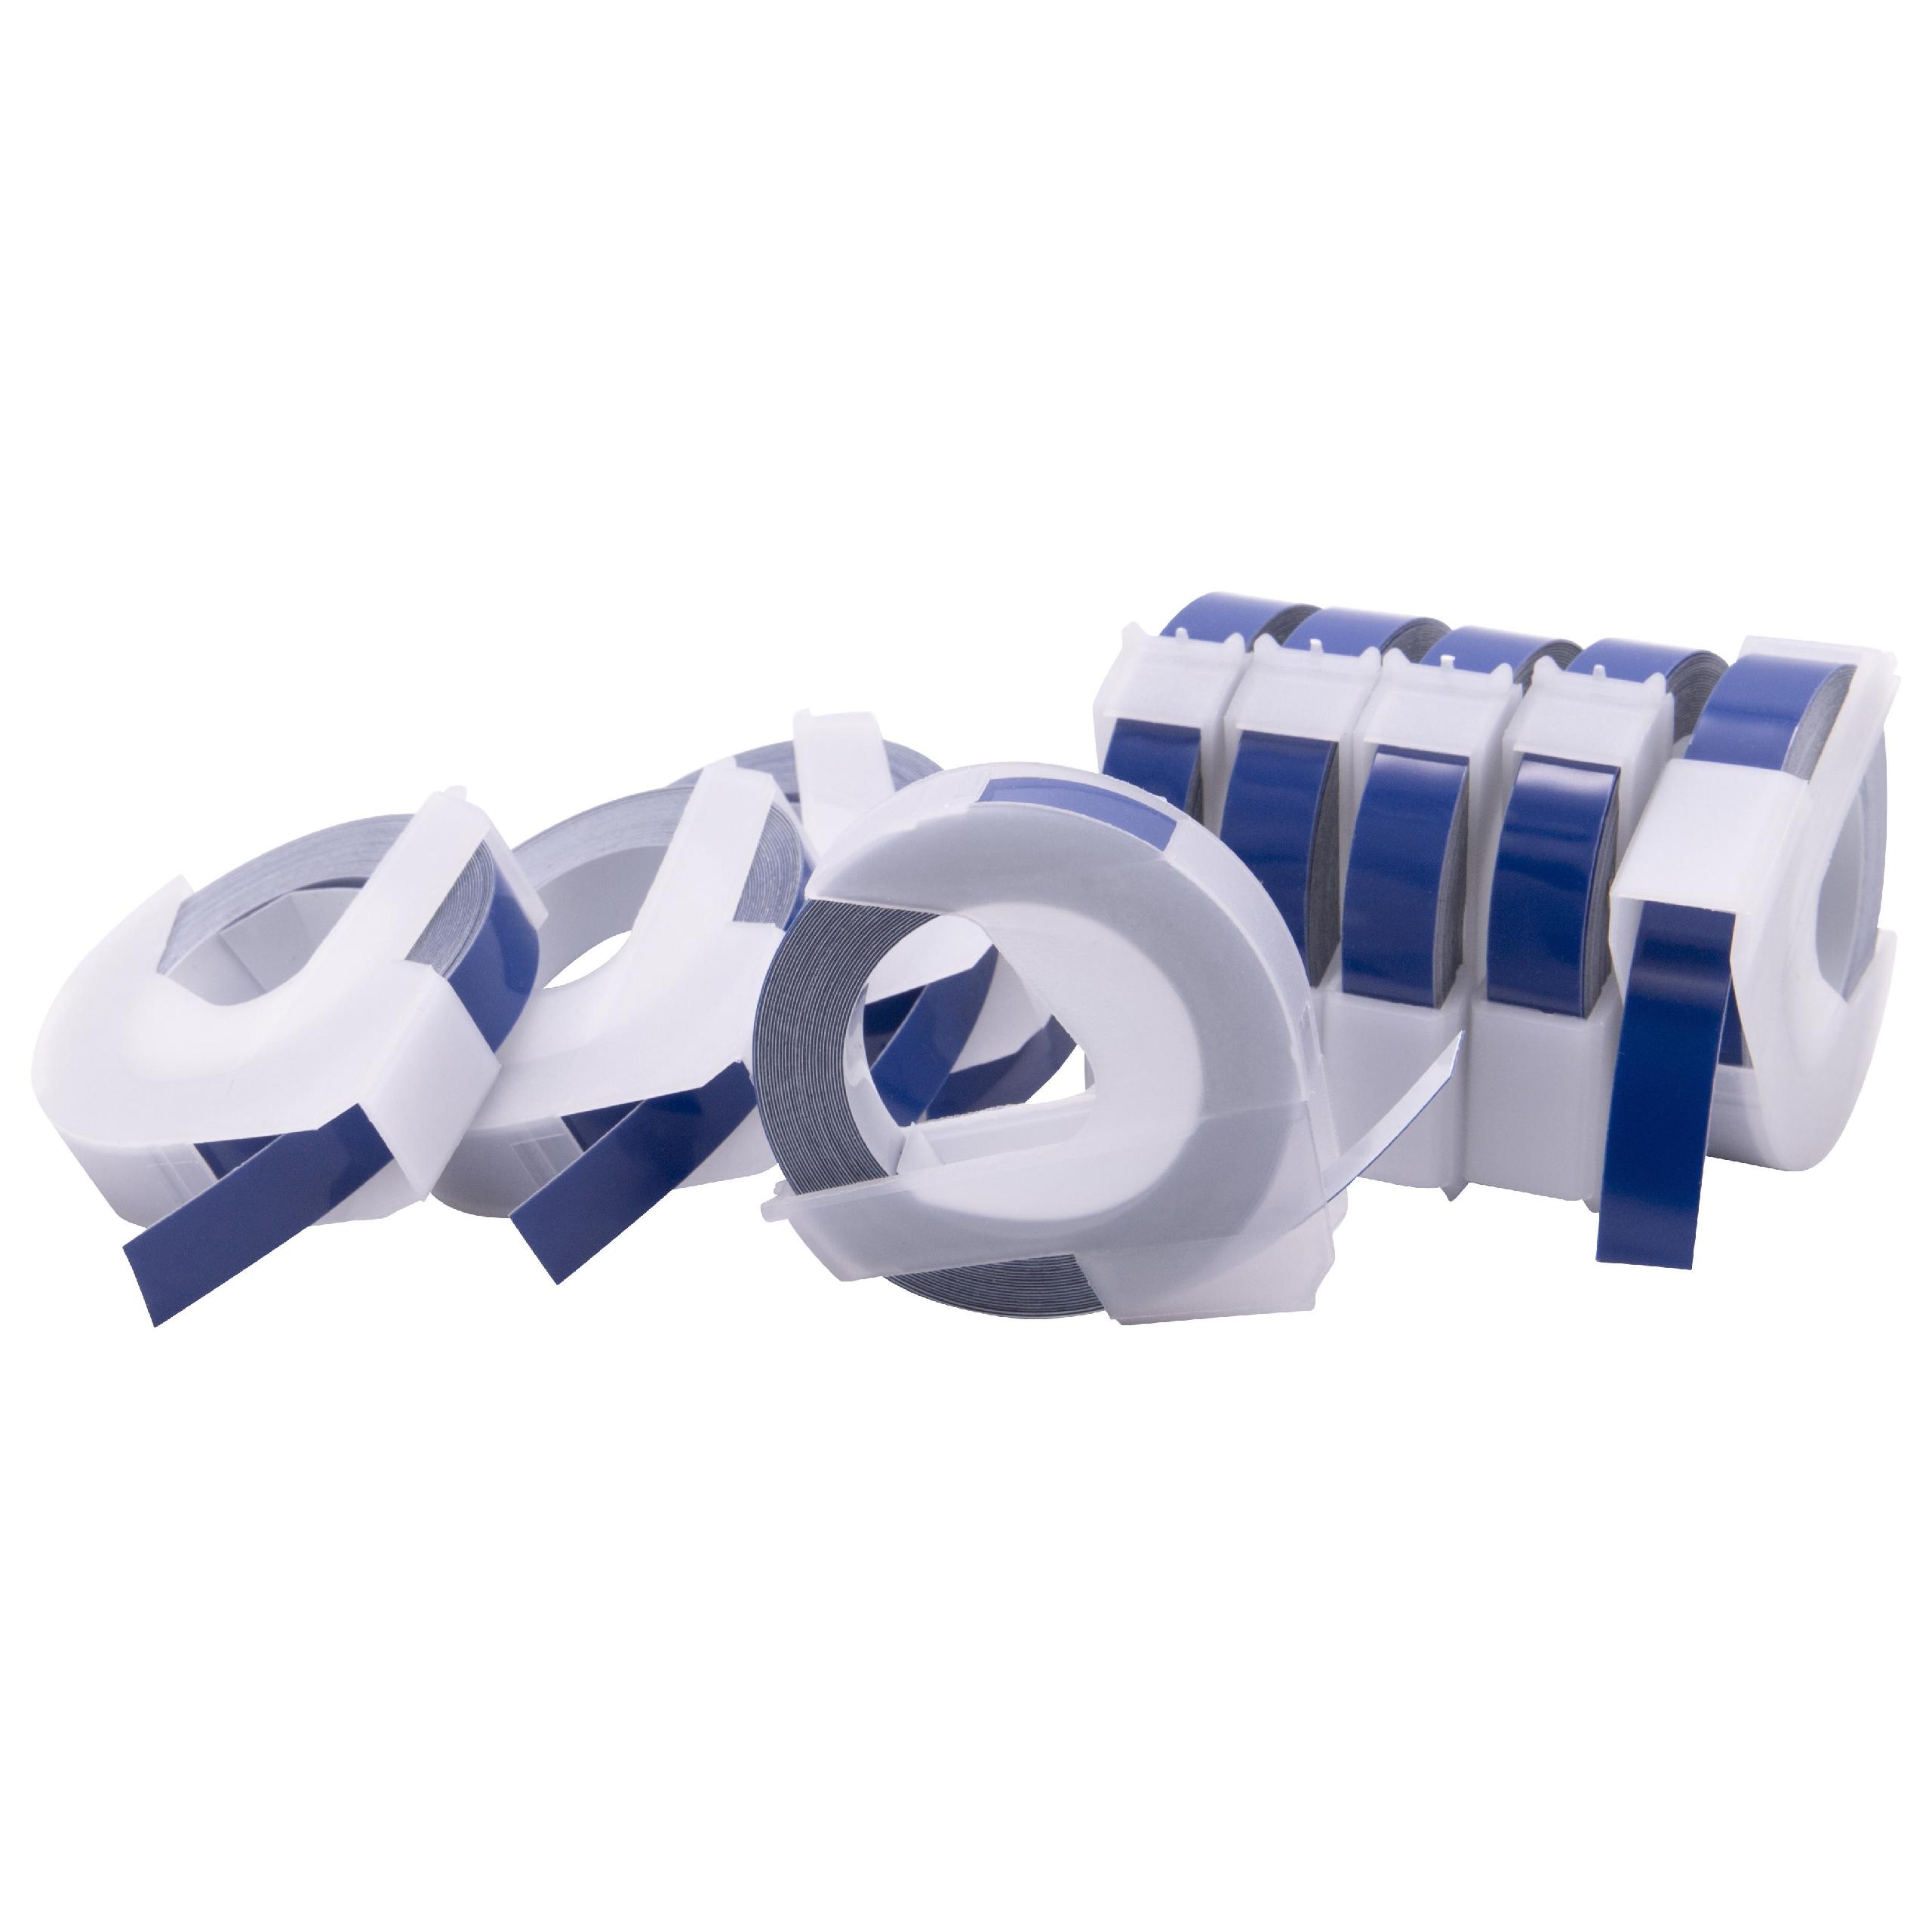 10x Casete cinta relieve 3D Casete cinta escritura reemplaza Dymo 0898140, 520106 Blanco su Azul